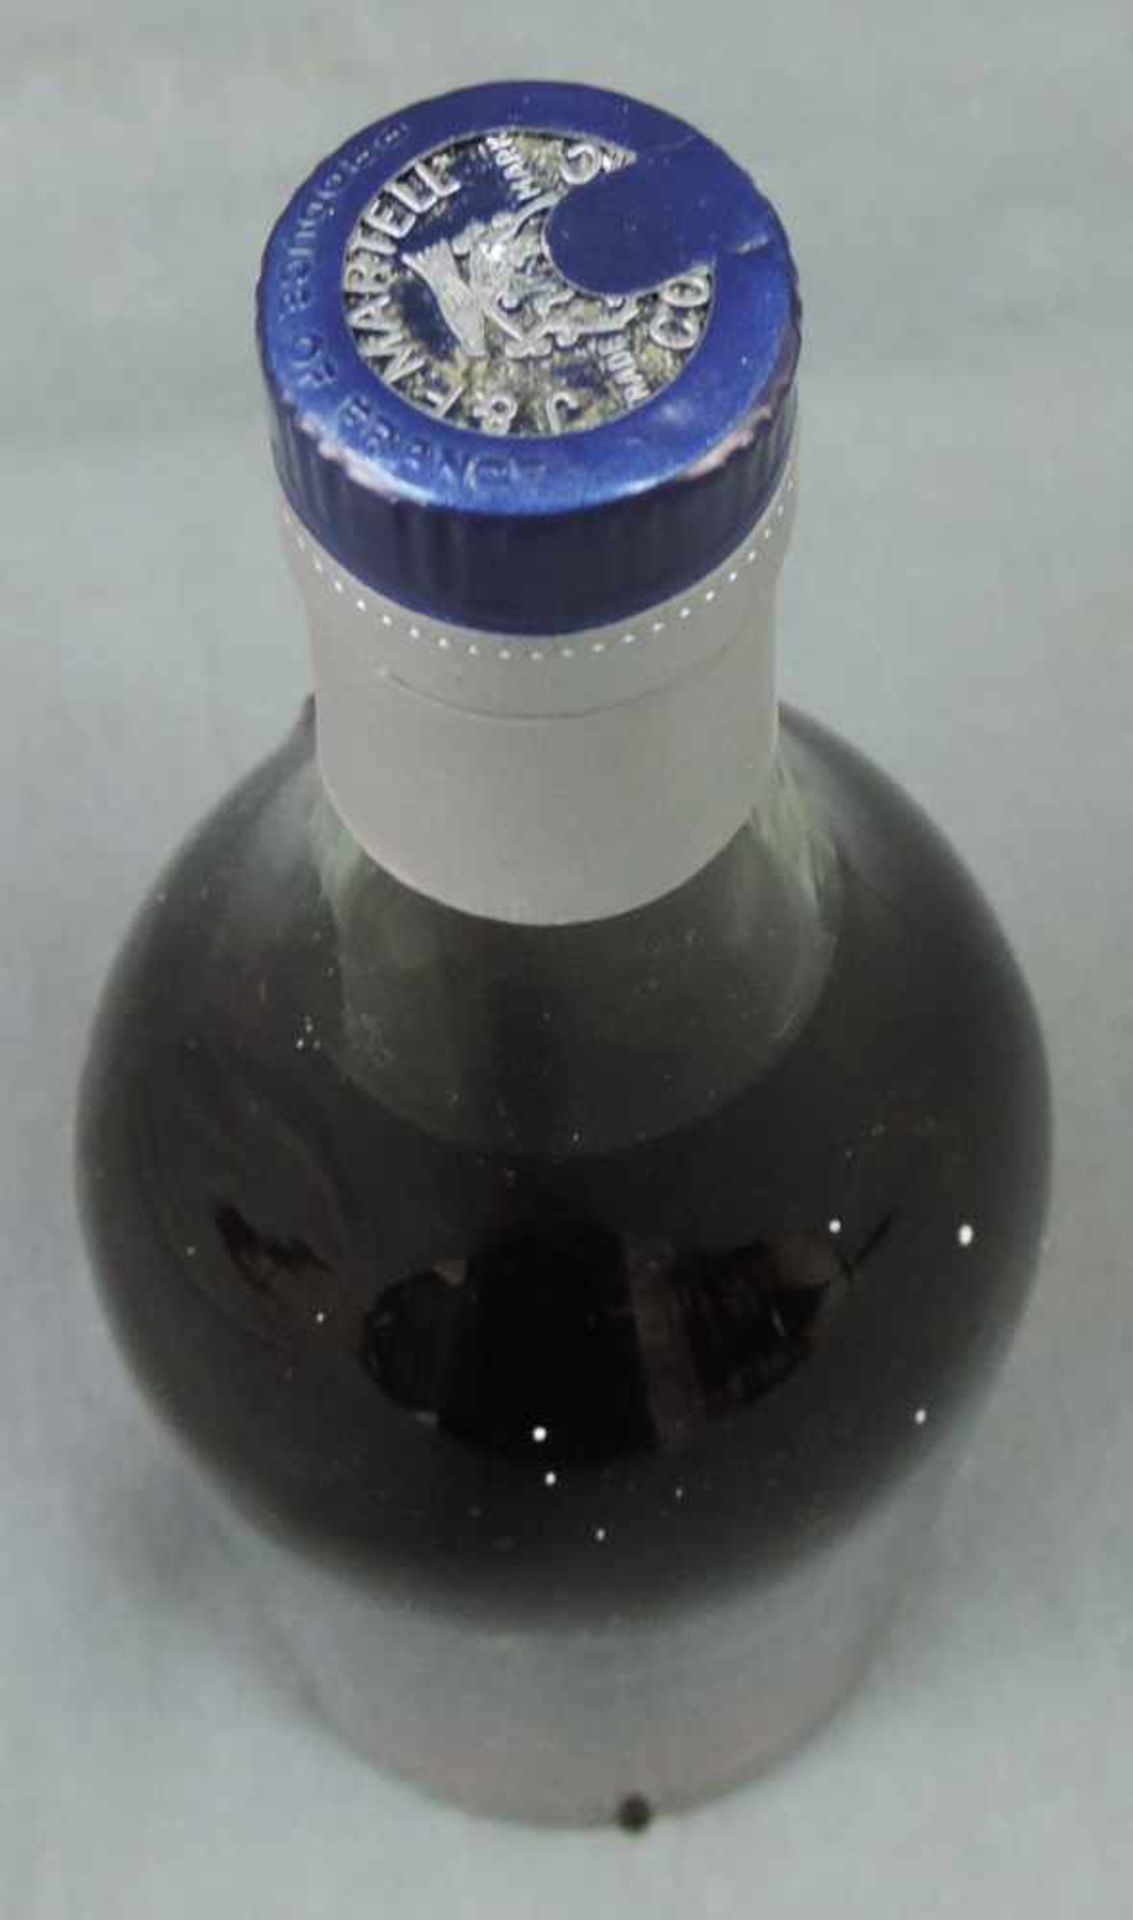 Martell Cognac Cordon Bleu. 1 Flasche 0,7 Liter. Circa 20 Jahre Kellergelagert. Frankreich. 40 % - Bild 4 aus 4